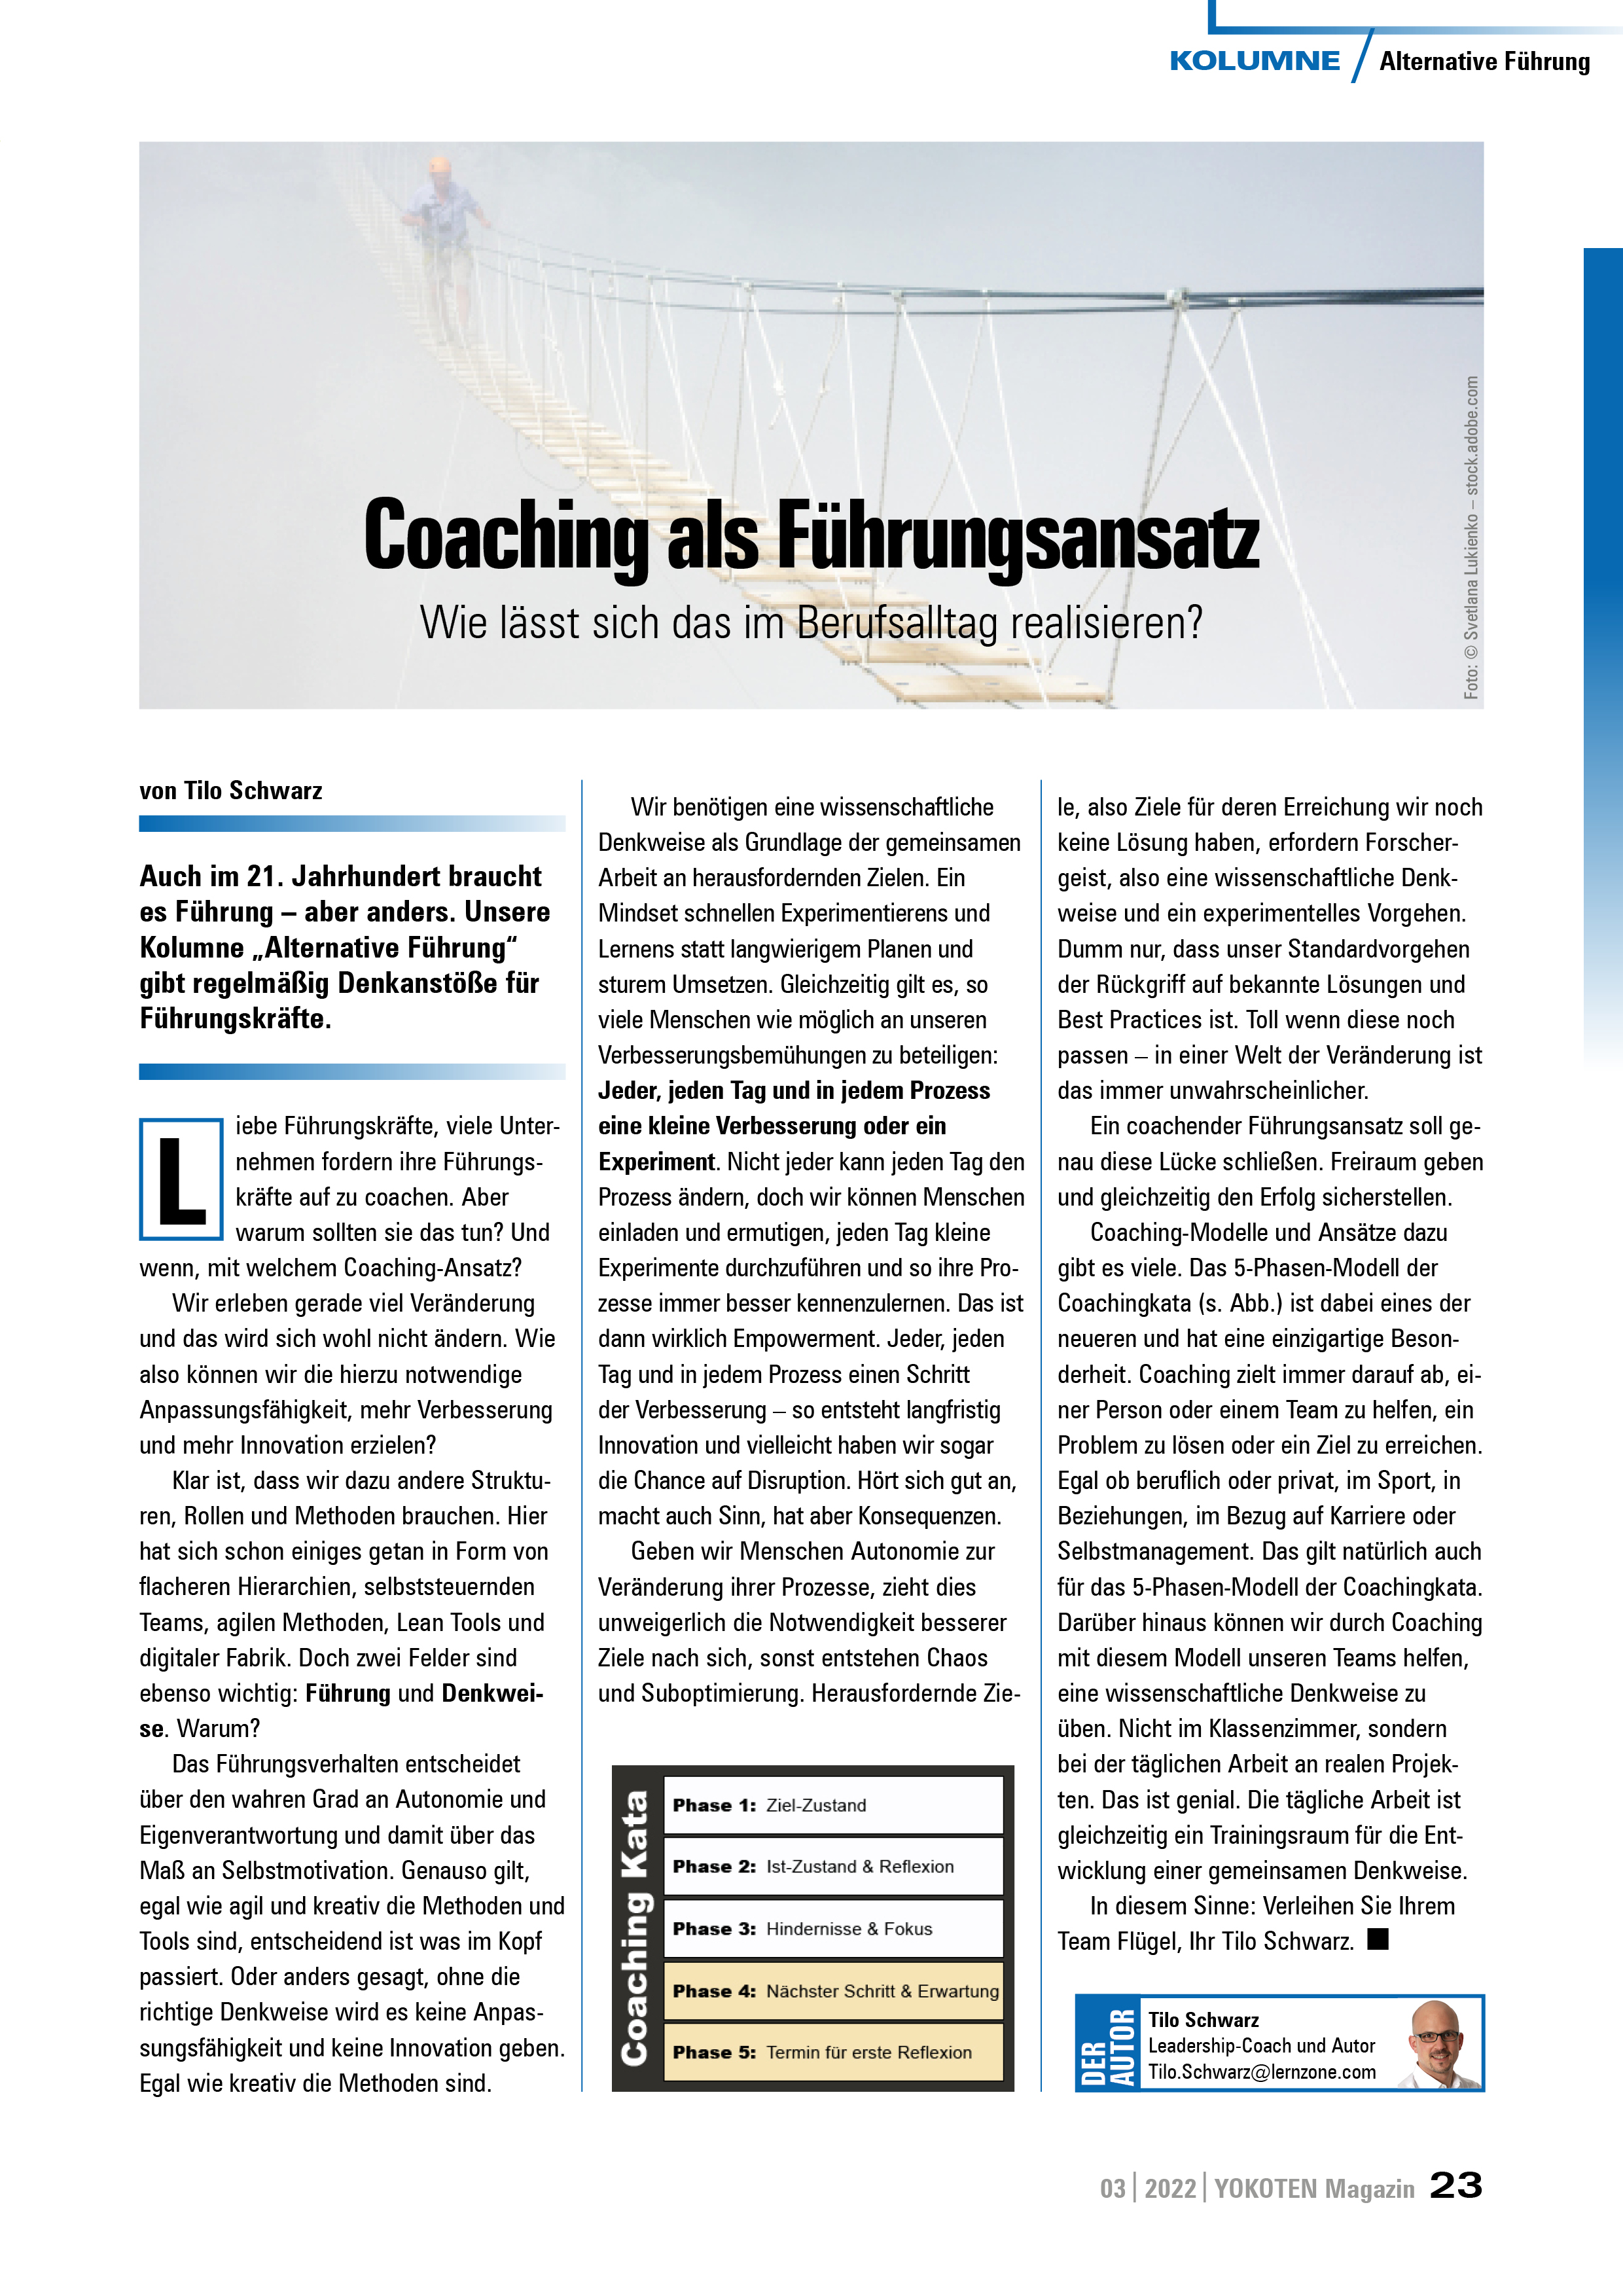 YOKOTEN-Artikel: Coaching als Führungsansatz